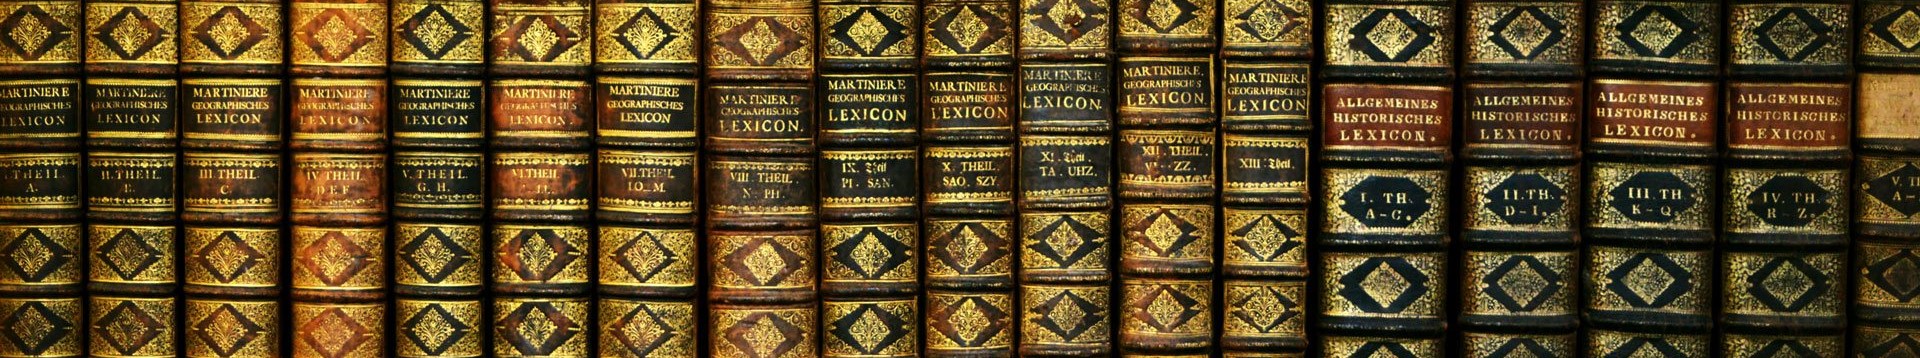 Darstellung mehrerer Bücher in einer horizontalen Reihe mit braunem Ledereinband und goldenen Buchstaben